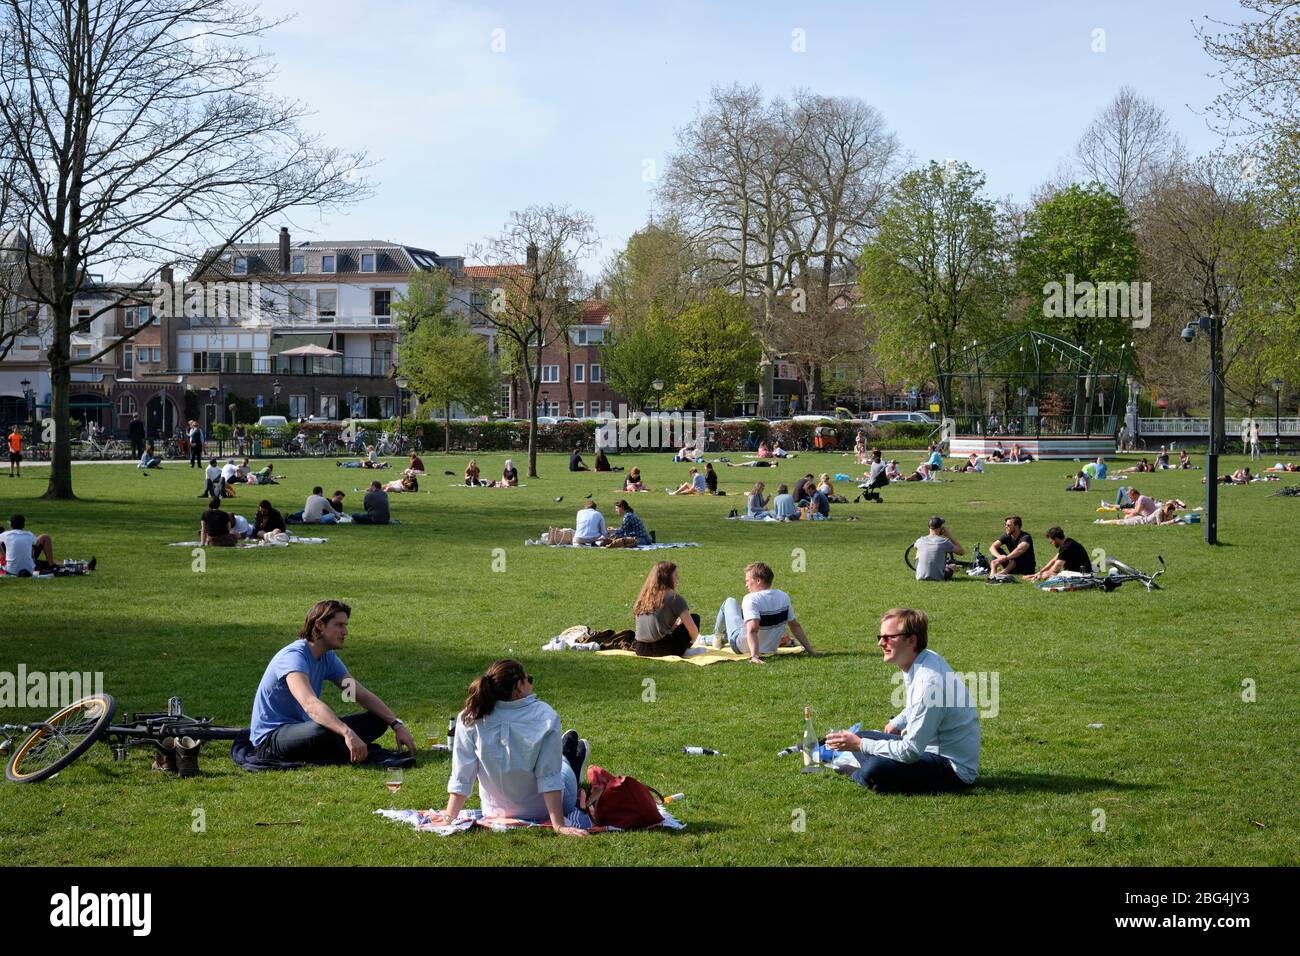 Corona Krise/soziale Distanzierung: Menschen in kleinen Gruppen (max. 3 Personen) in diesem Stadtpark in Utrecht, Niederlande. Stockfoto